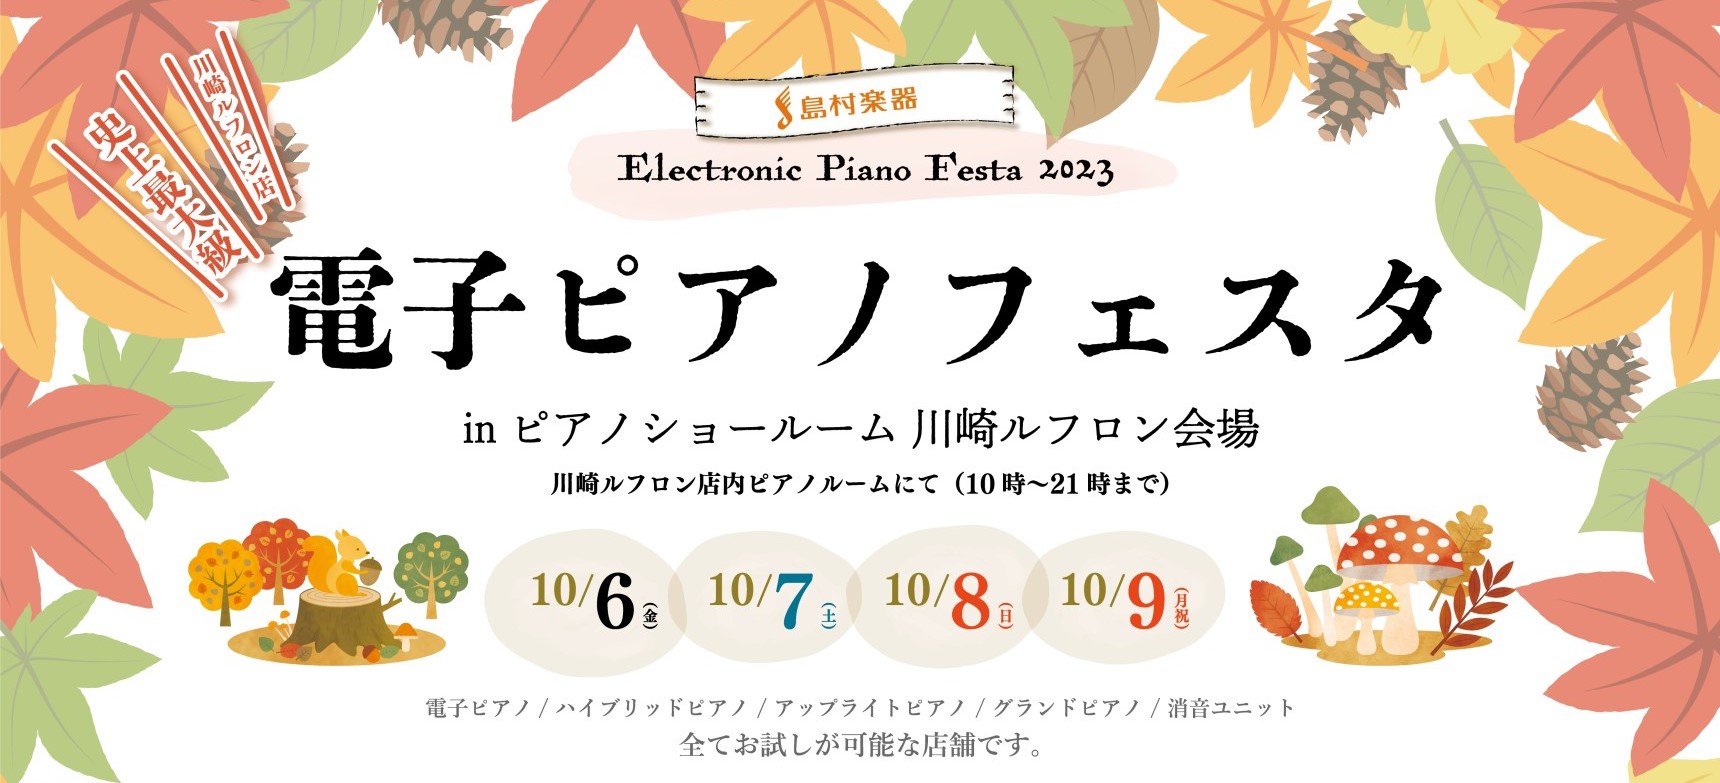 いつもご愛顧いただいているお客様へ感謝の気持ちを込めて、川崎会場史上最大級の「ゴールデンウィーク電子ピアノフェア2023」の開催が決定いたしました！！「どんなピアノを選んだらいいの？」という方には、ピアノ選びのポイントを専門スタッフが分かりやすくご案内いたします。 ◆ご予約方法 ネットからのご予約、 […]